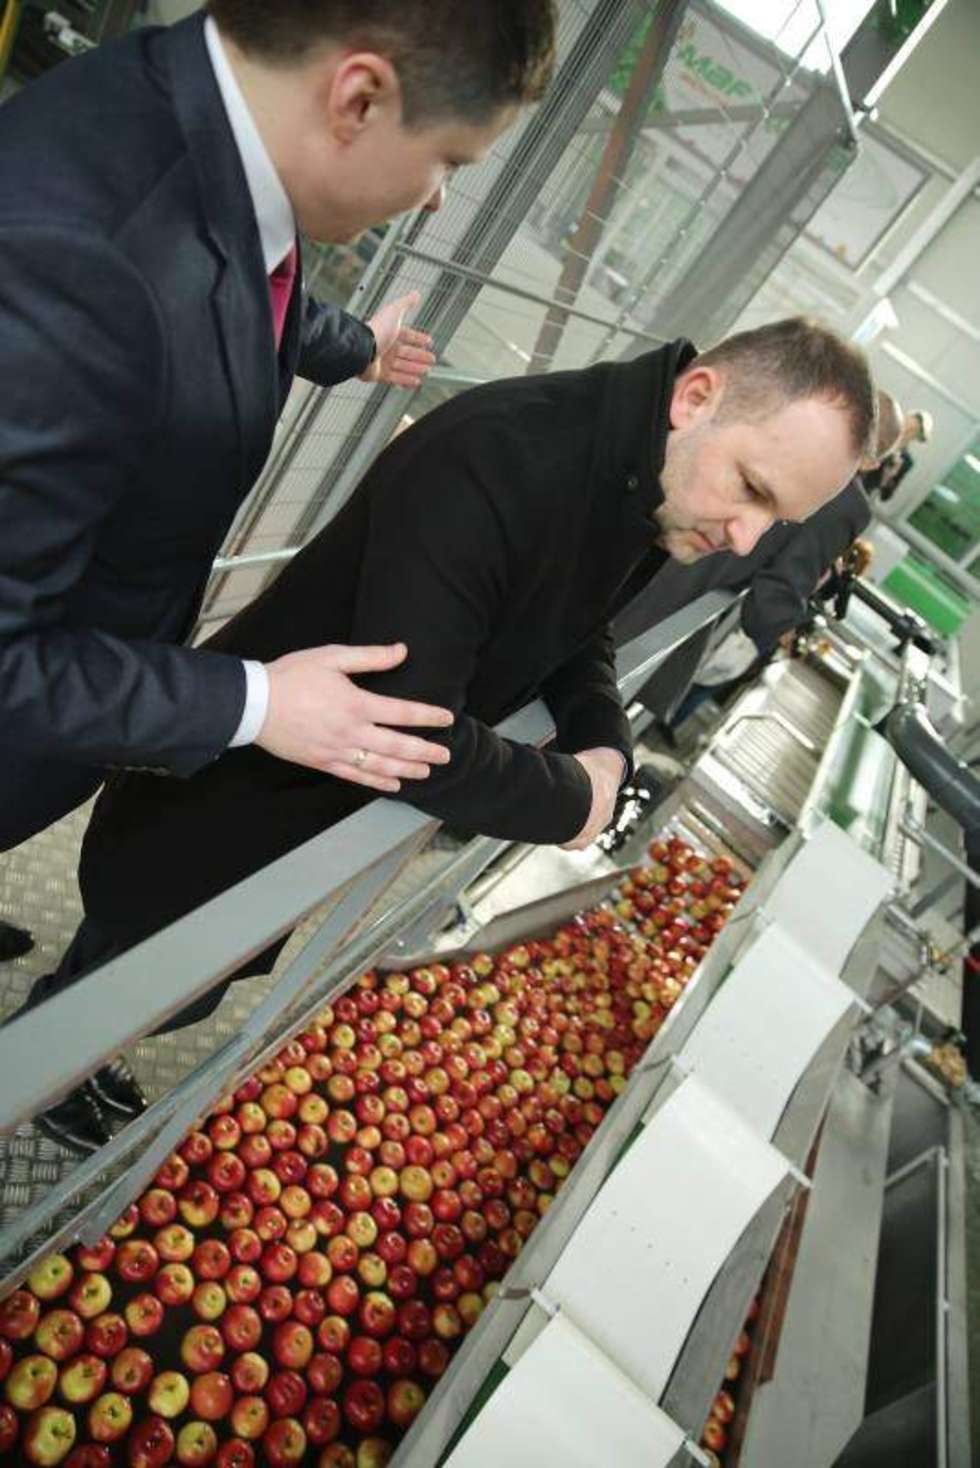  W Piotrawinie koło Opola Lubelskiego firma Fruvitaland skupiająca 128 producentów owoców i warzyw oficjalnie otworzyła centrum logistyczne z nowoczesną sortownią. Przedmiotem obrotu grupy są owoce jabłoni, wiśni, śliwy, gruszy, truskawki, maliny, porzeczki oraz warzywa. Fot. Maciej Kaczanowski  